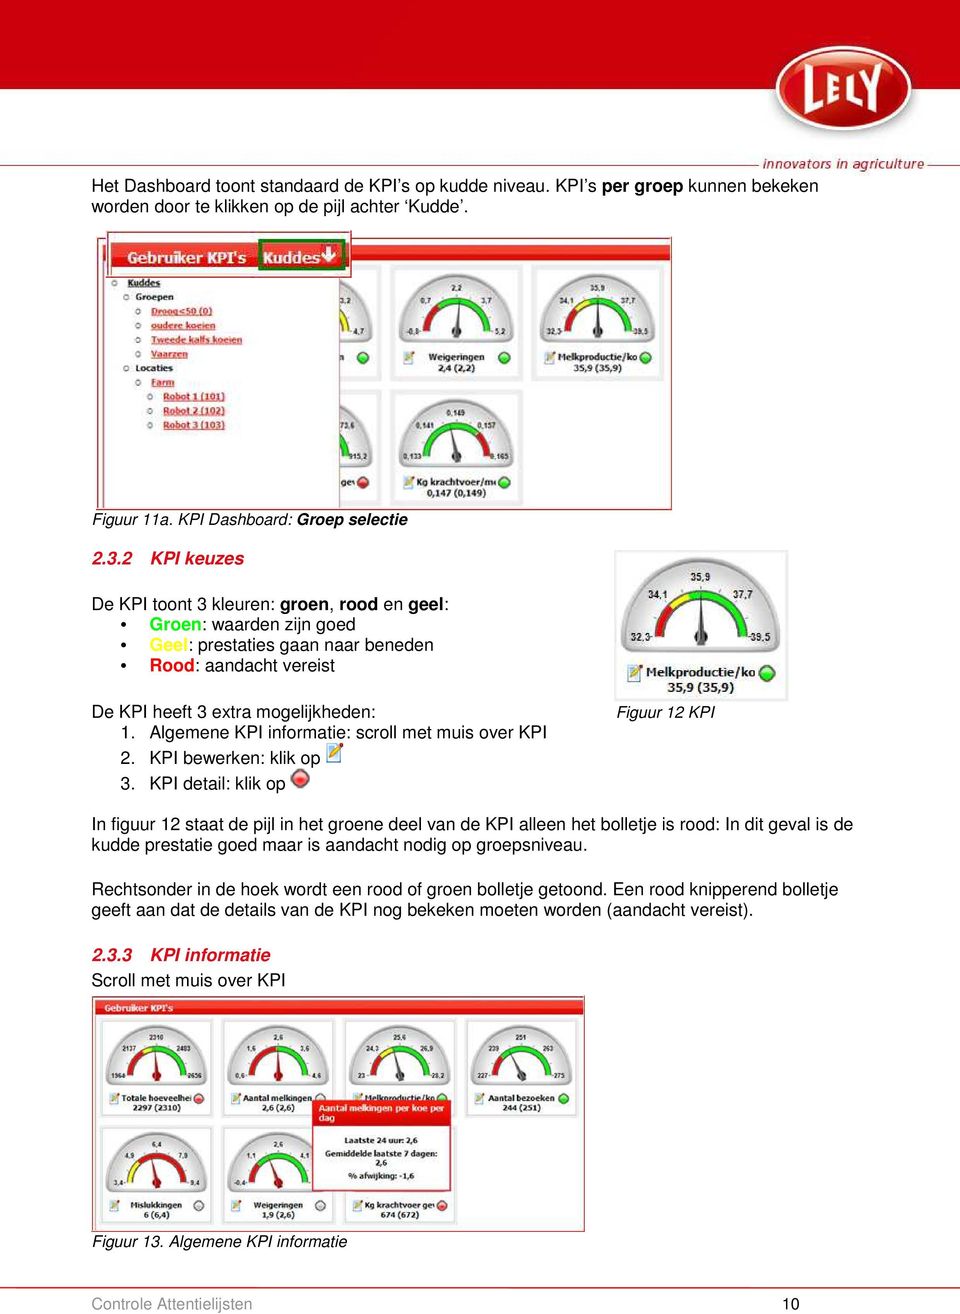 Algemene KPI informatie: scroll met muis over KPI 2. KPI bewerken: klik op 3.